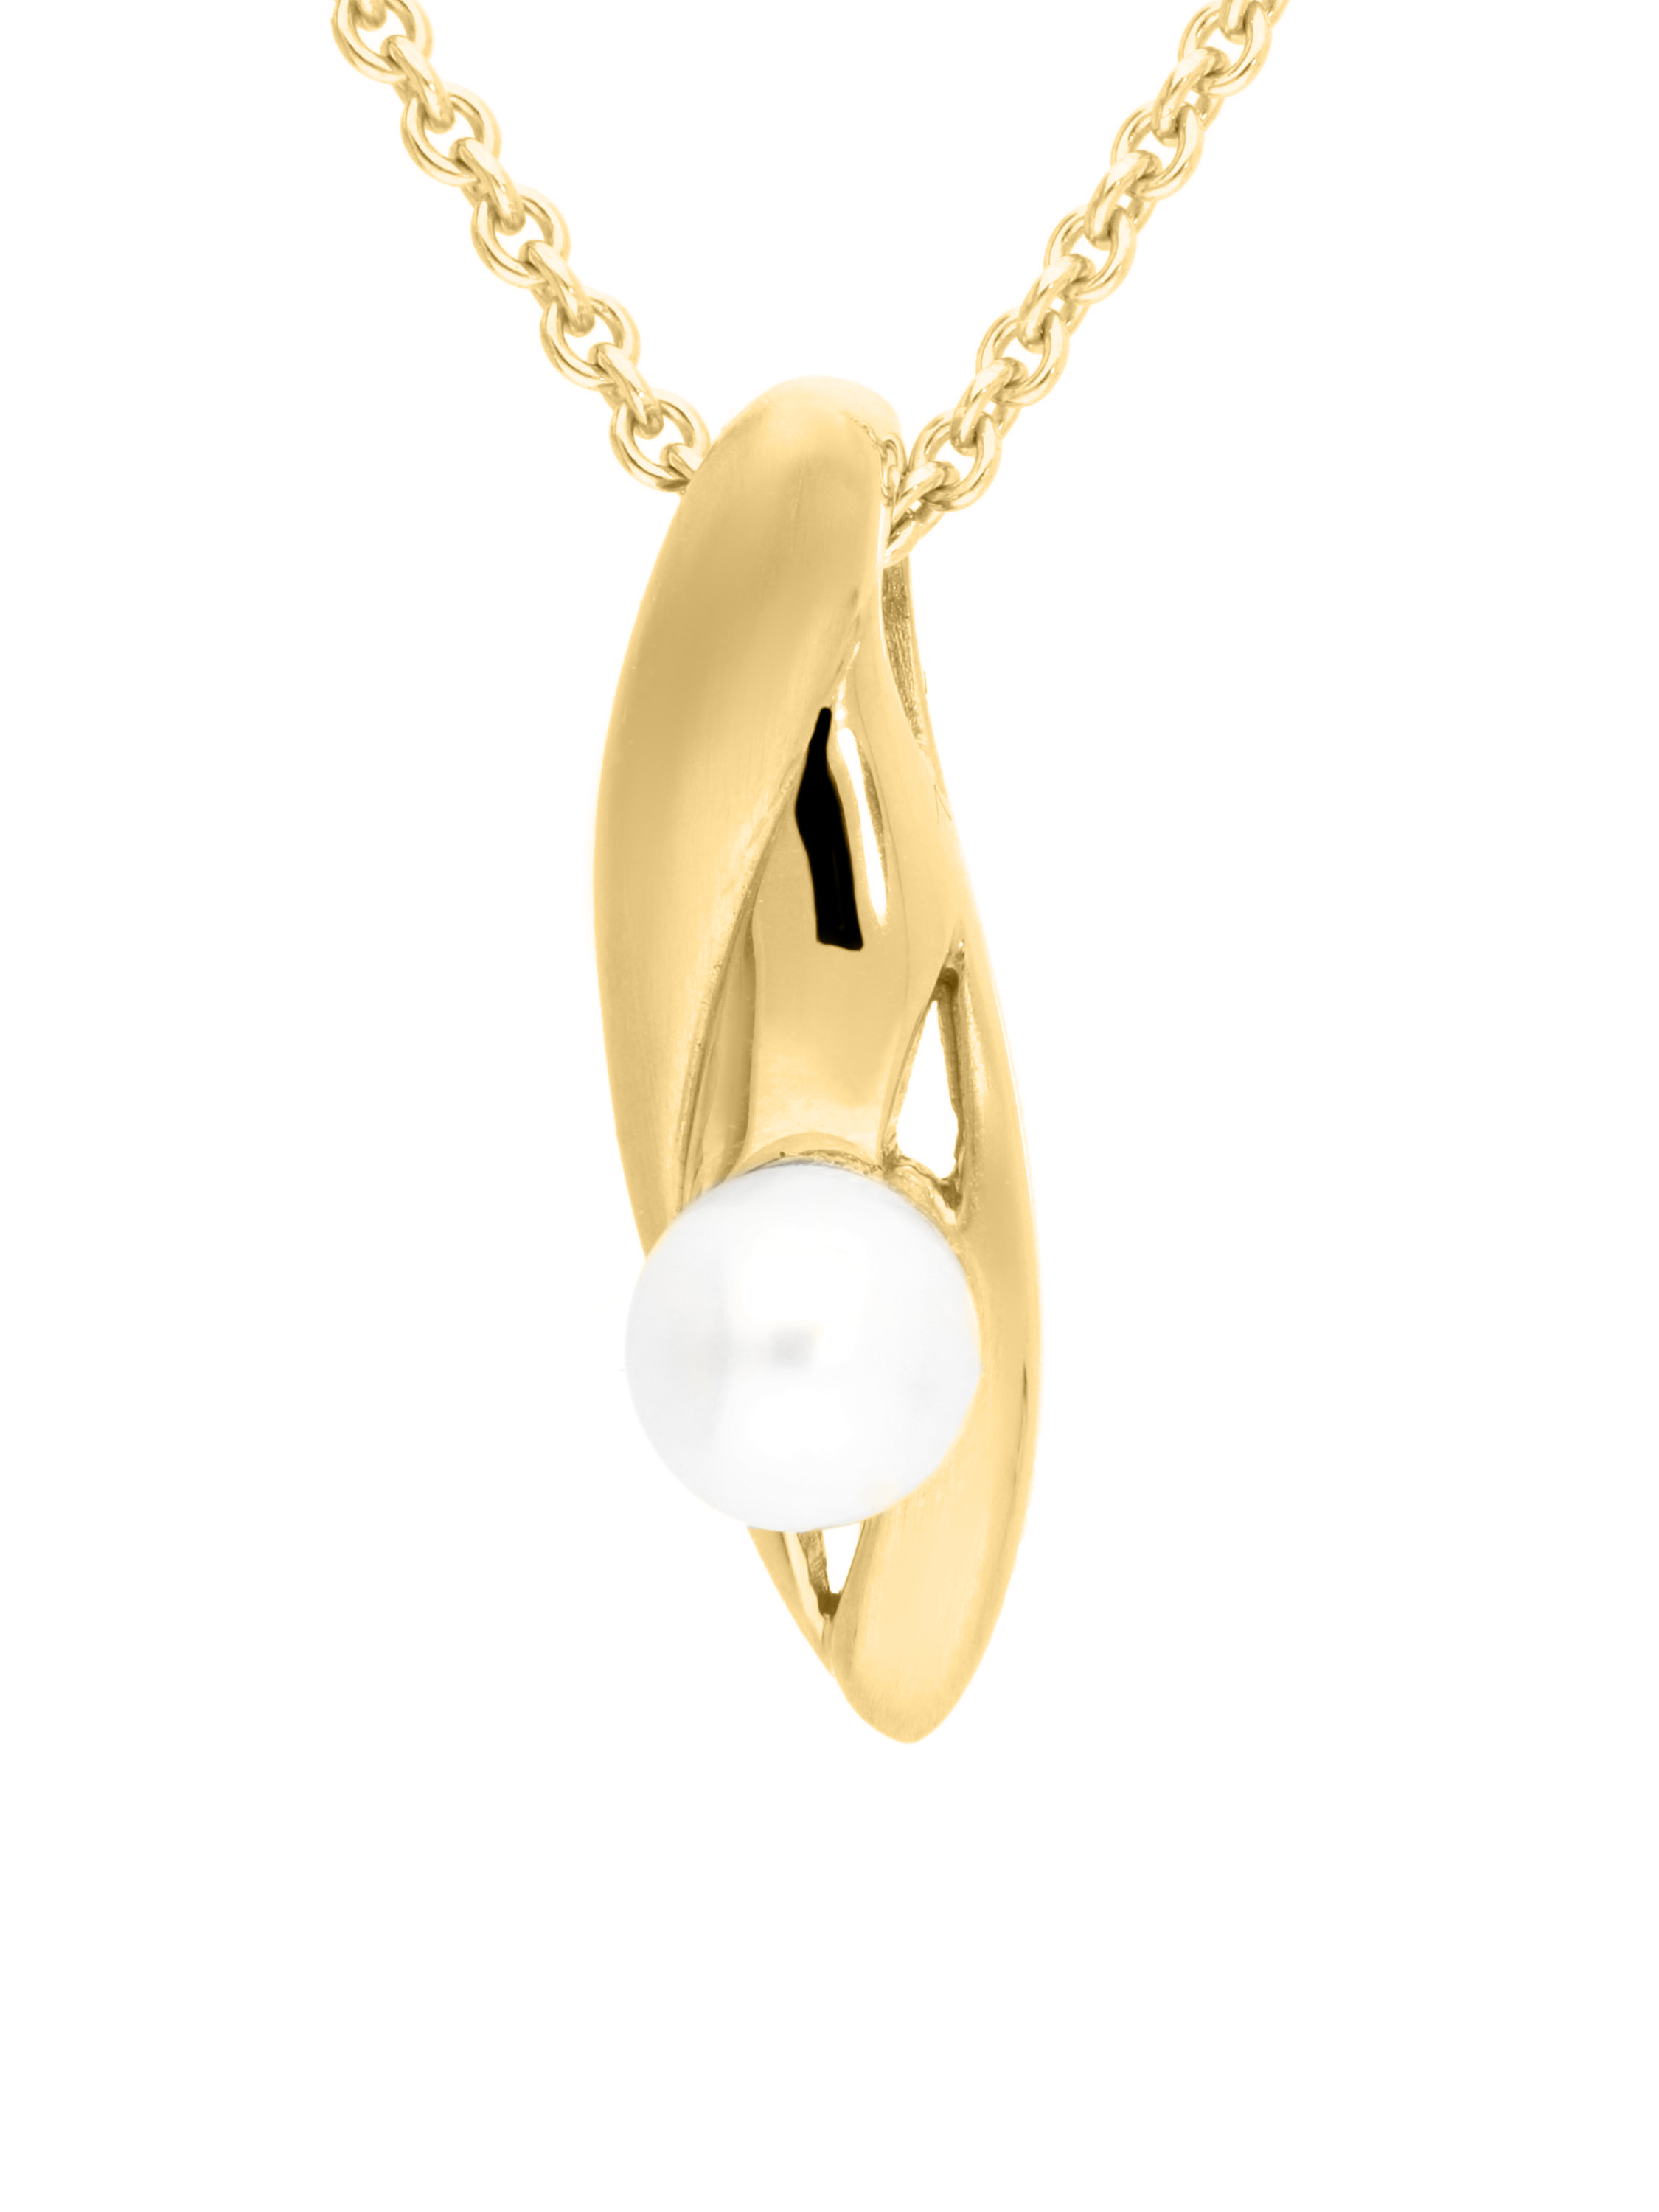 Konstanza - Damenanhänger mit Perle 585 Gold